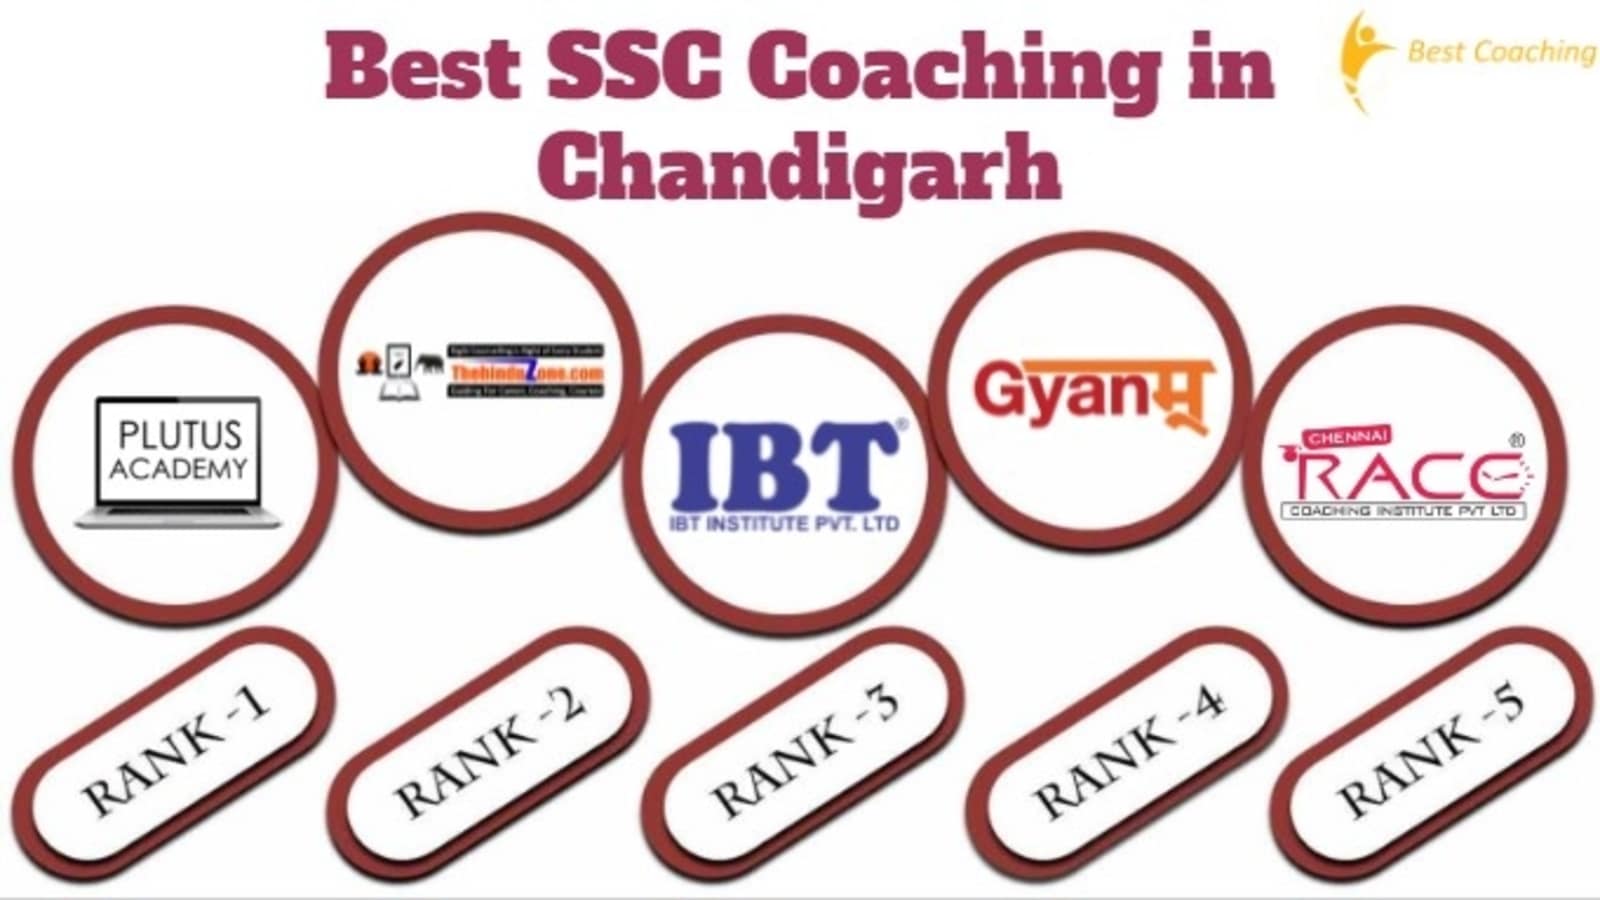 Top SSC Coaching in Chandigarh